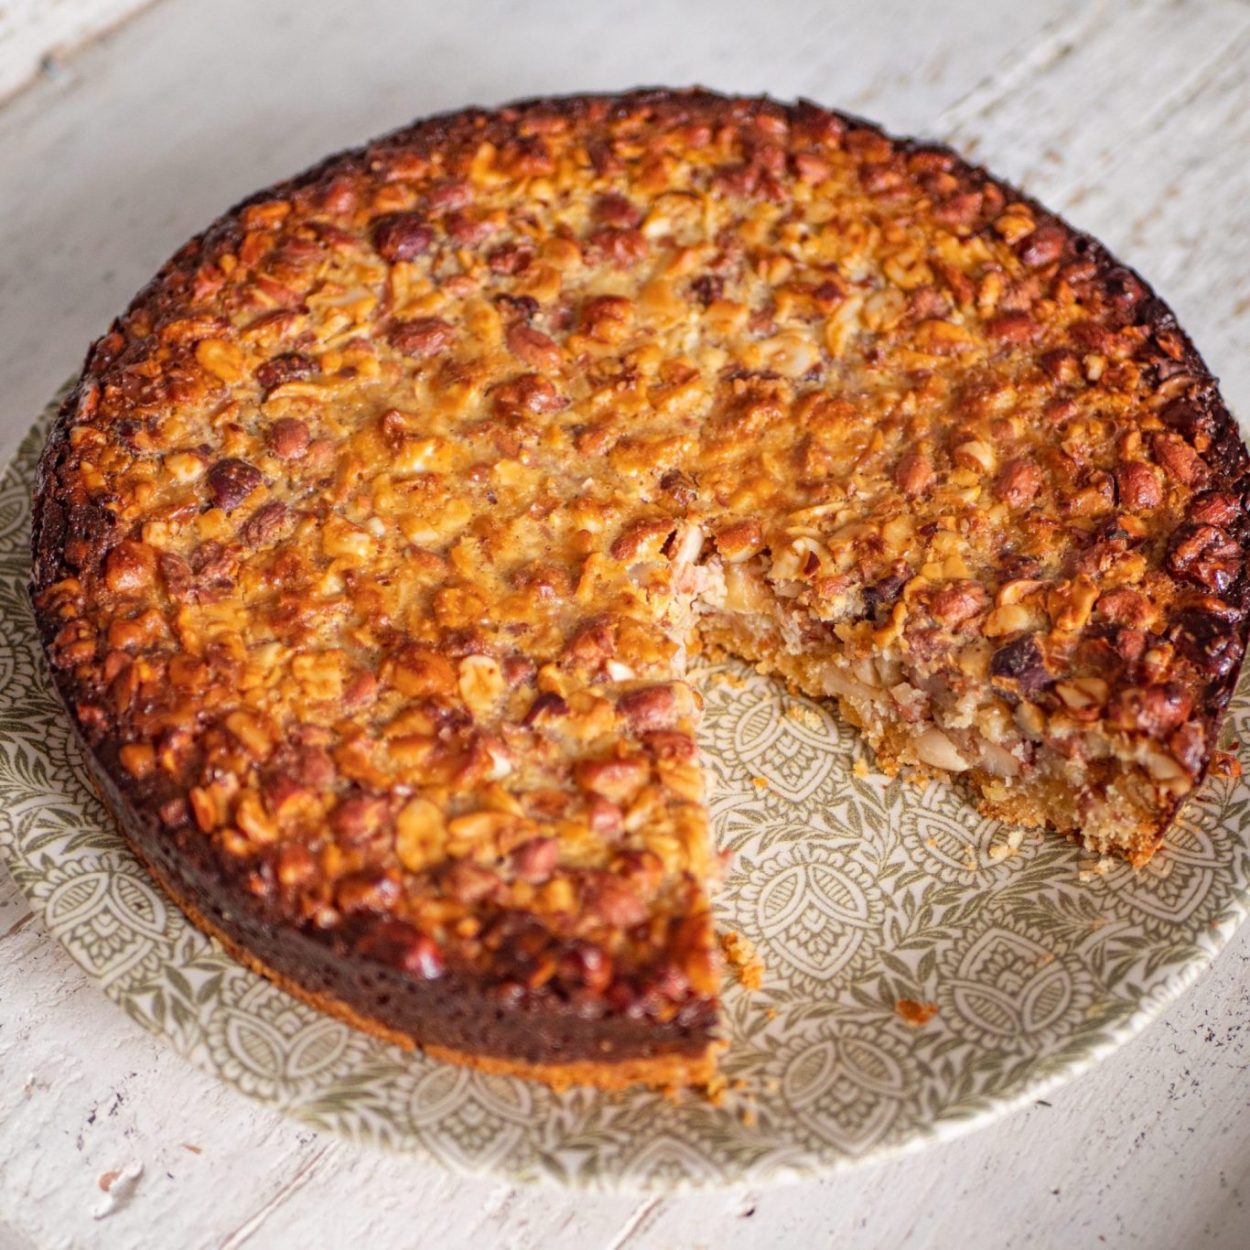 Kuchen de nuez – Gâteau croquant au cœur fondant aux noix – Recette chilienne